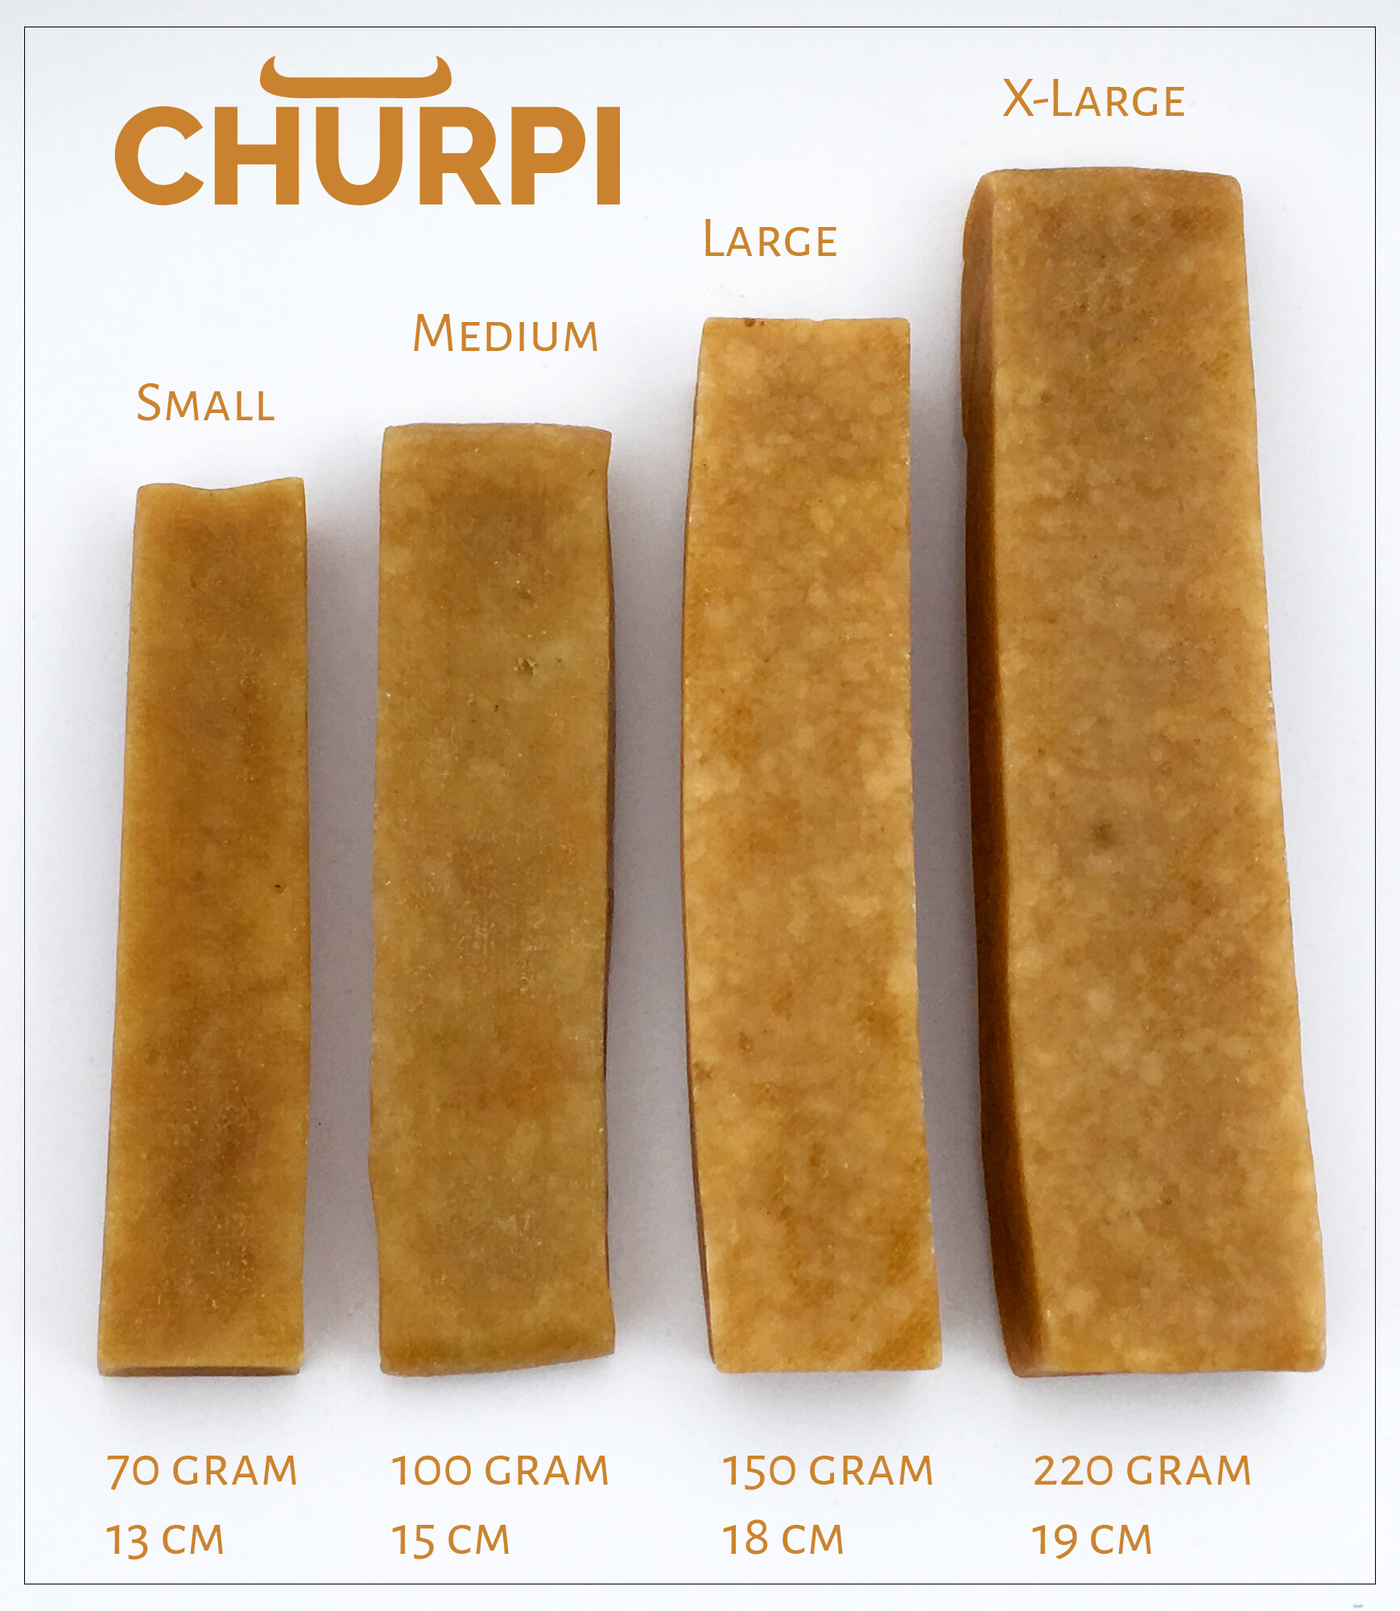 Churpi - Medium (100gr)